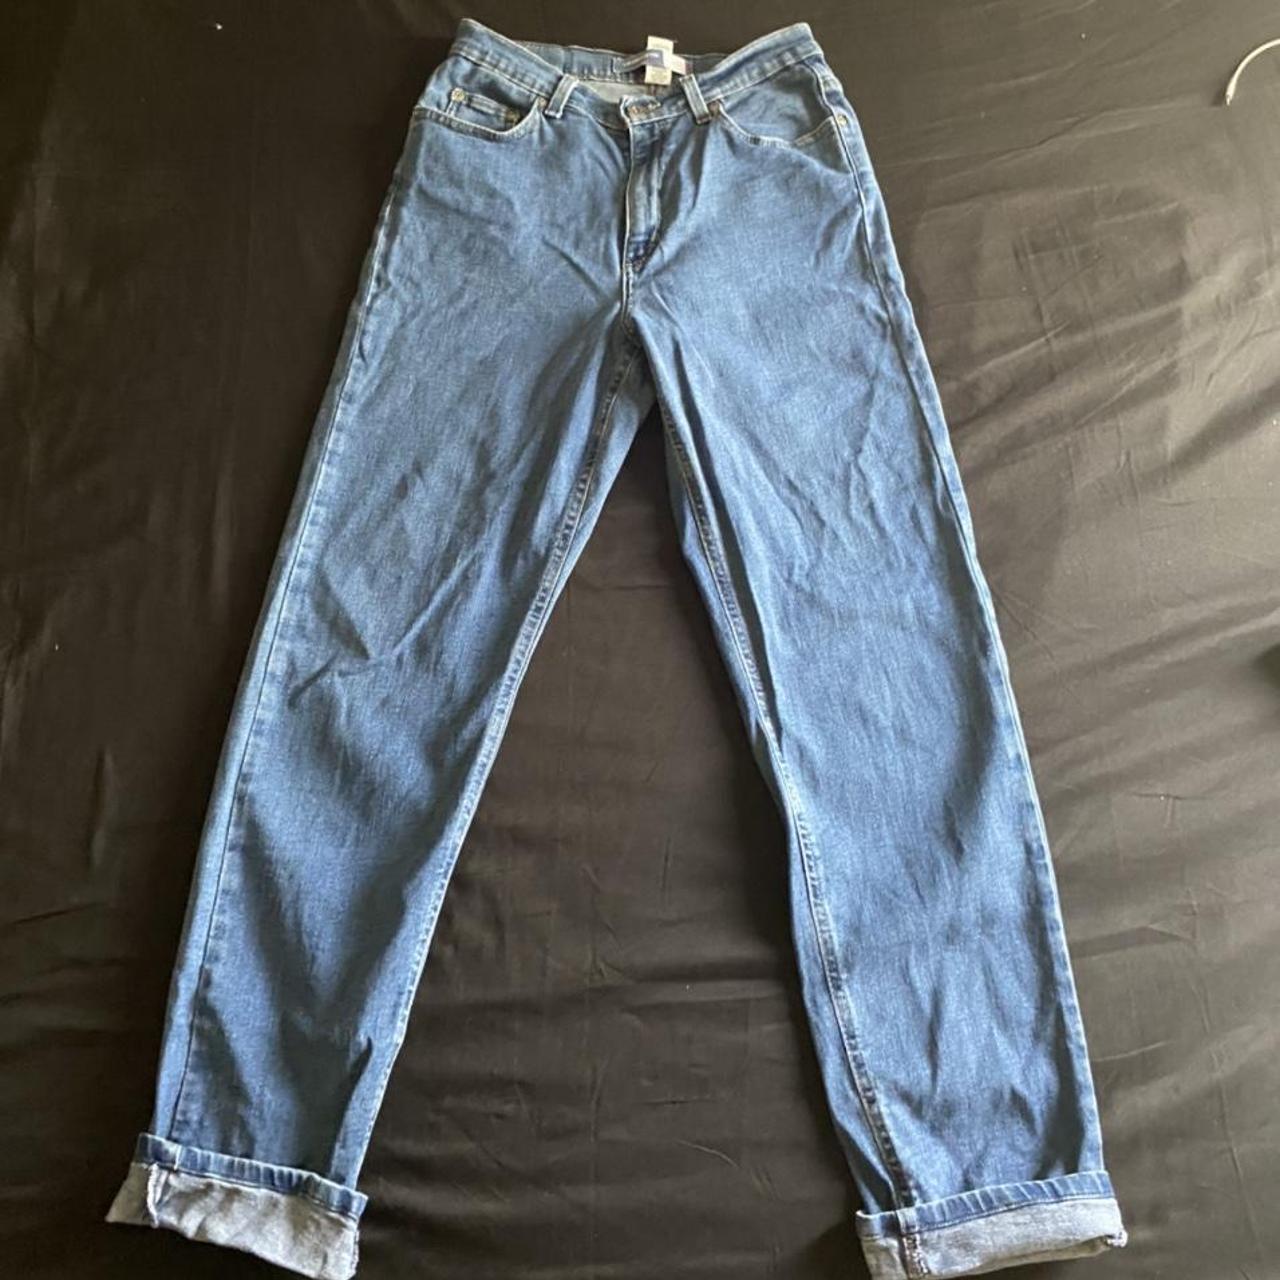 Vintage Liz Claiborne jeans size 10 classic fit... - Depop